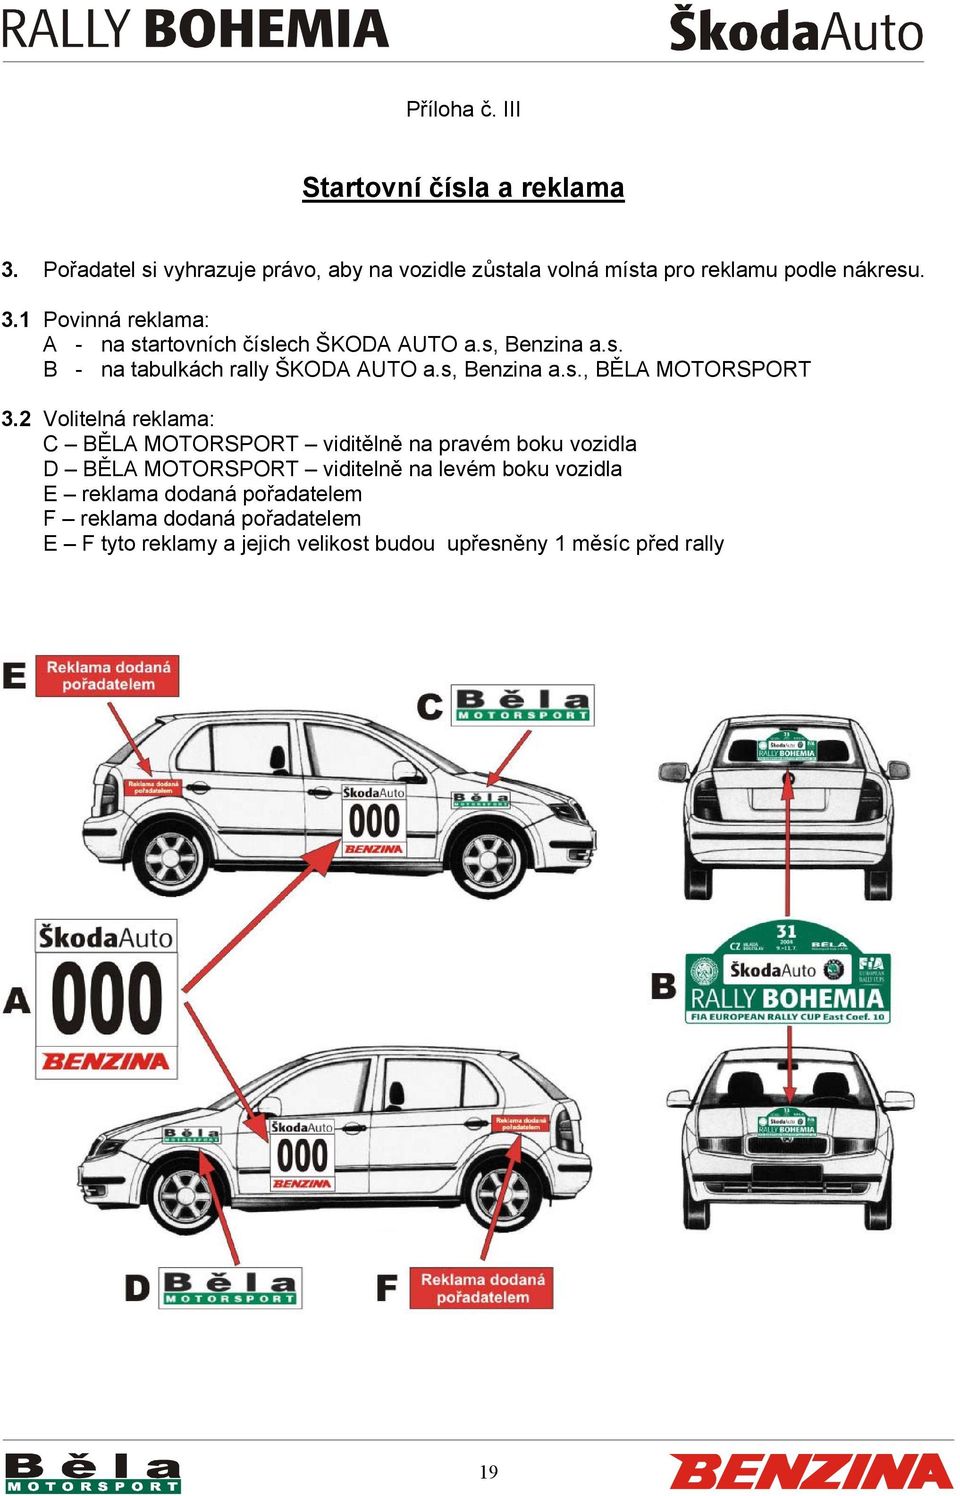 1 Povinná reklama: A - na startovních číslech ŠKODA AUTO a.s, Benzina a.s. B - na tabulkách rally ŠKODA AUTO a.s, Benzina a.s., BĚLA MOTORSPORT 3.